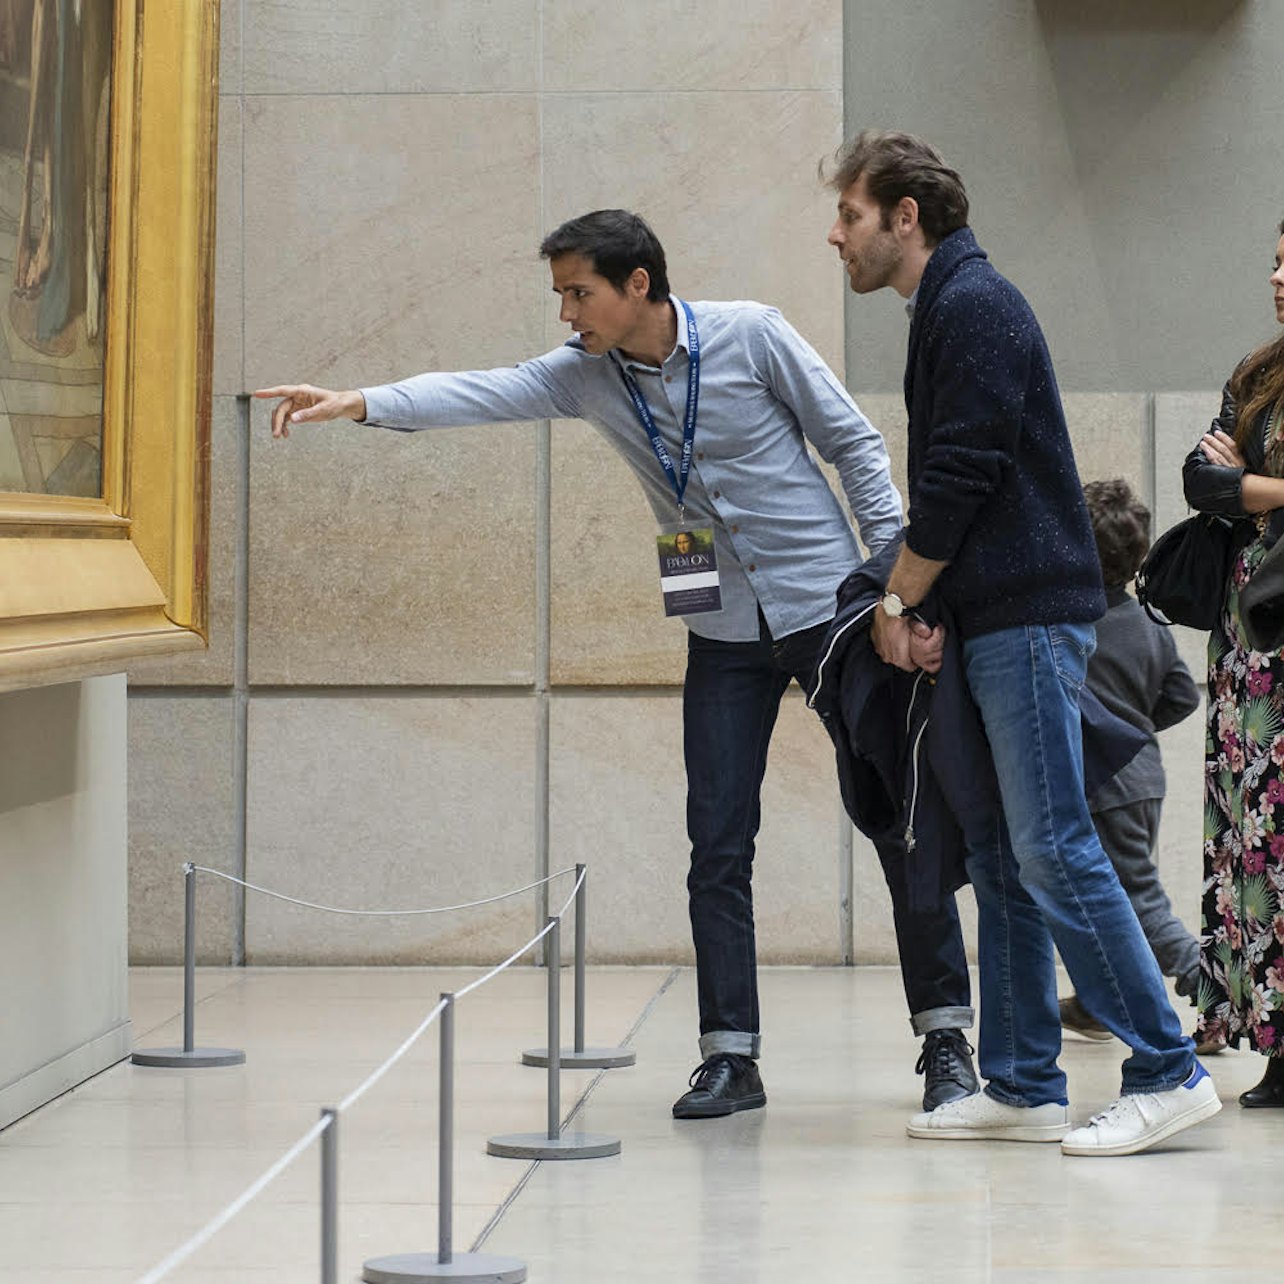 Museo de Orsay: Visita Guiada Semiprivada en Ingles - Alojamientos en Paris